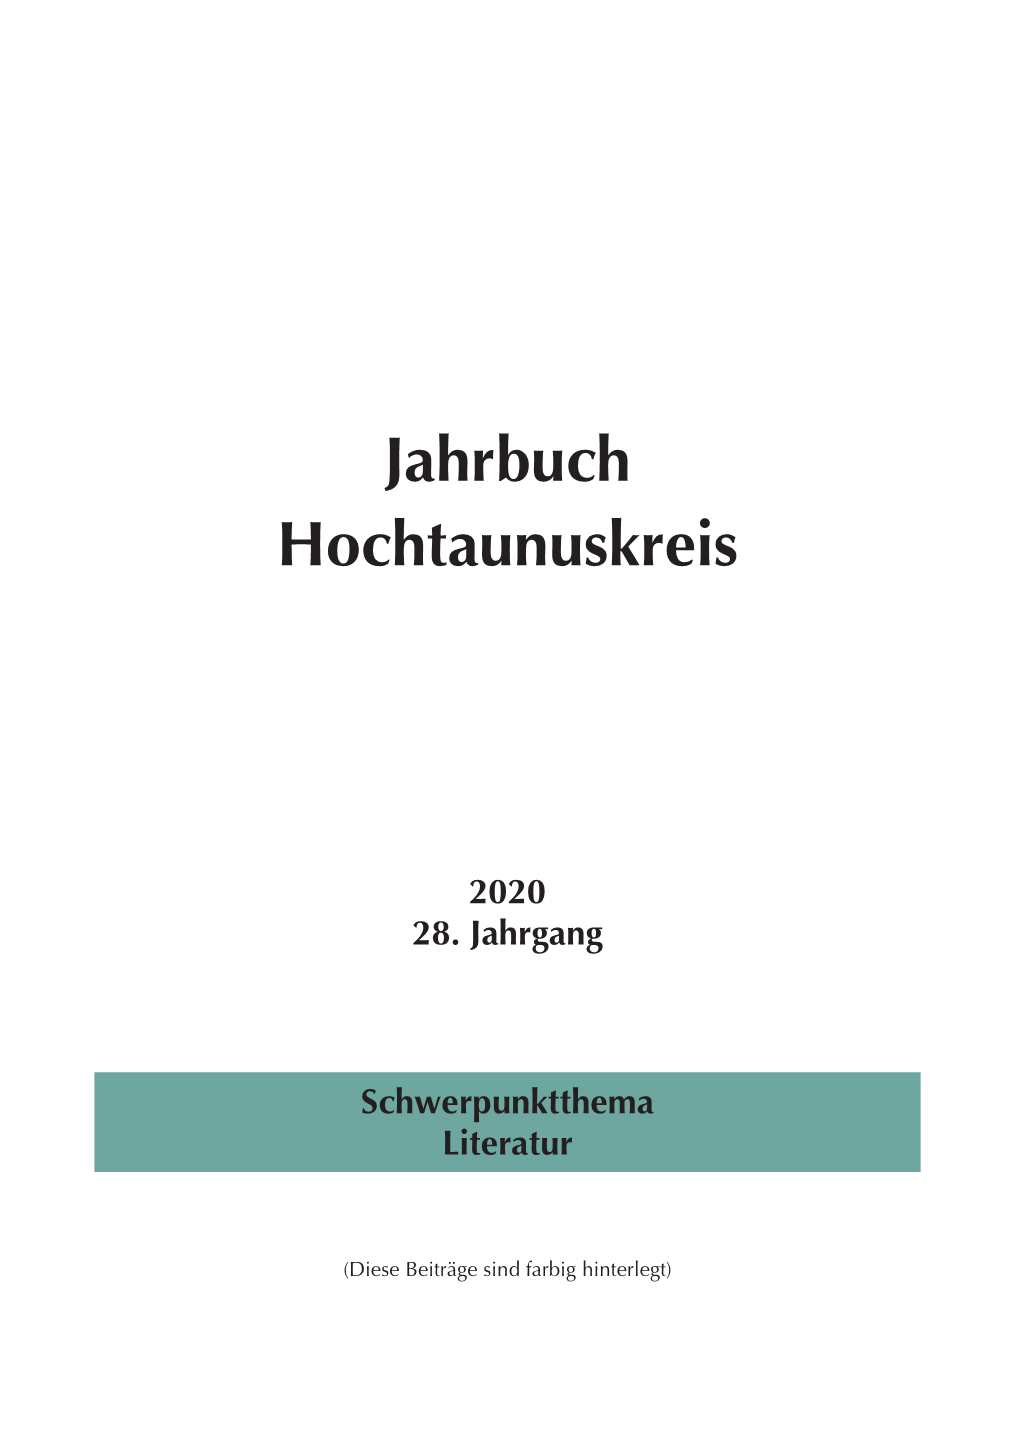 Jahrbuch Hochtaunuskreis (2020)